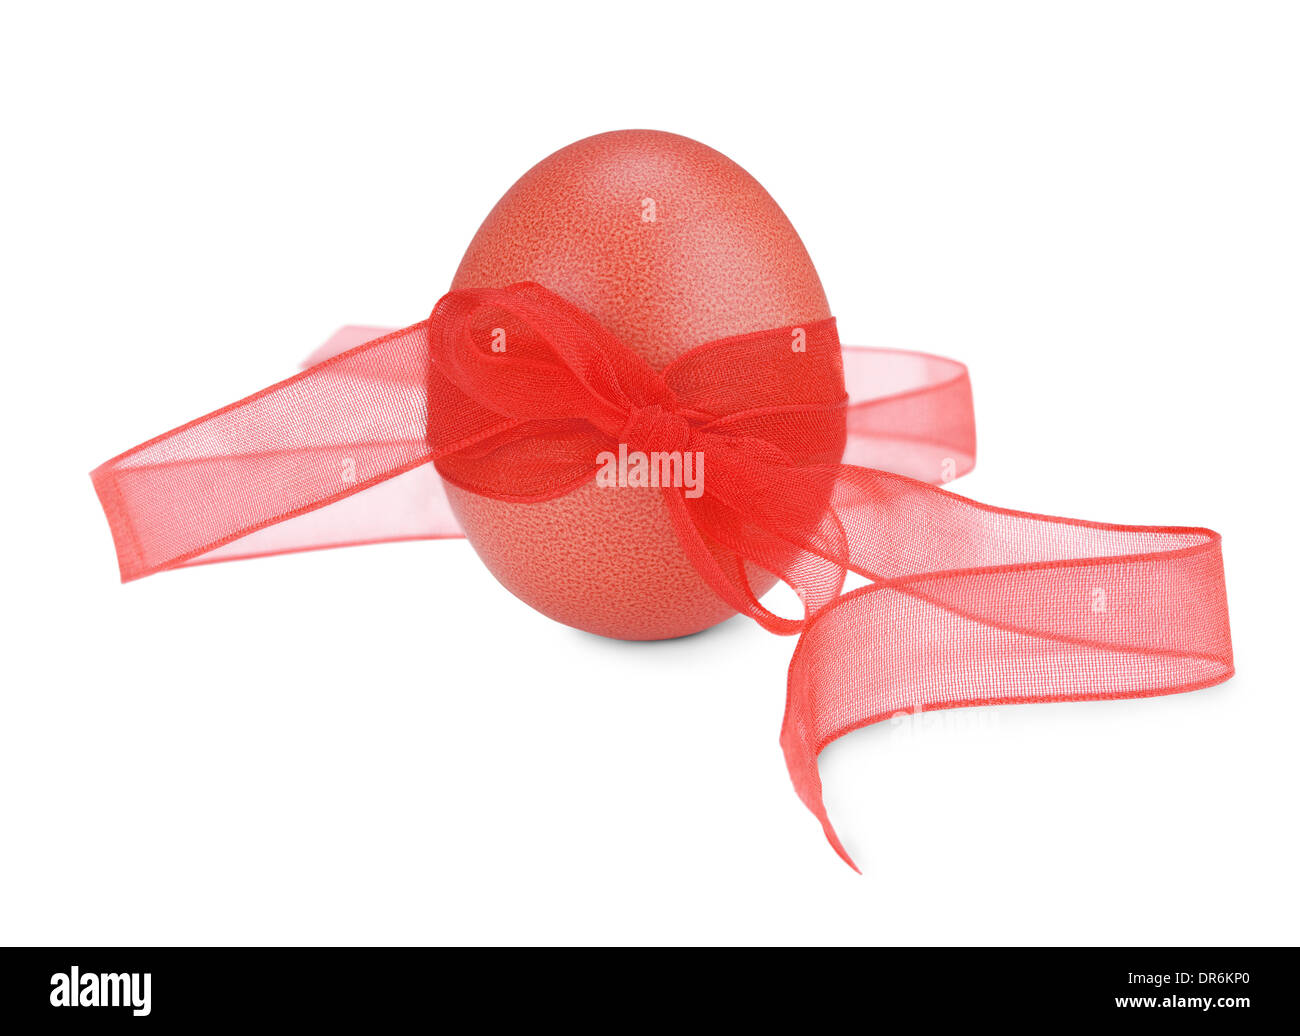 Oeuf de Pâques rouge avec un ruban rouge isolé sur fond blanc Banque D'Images